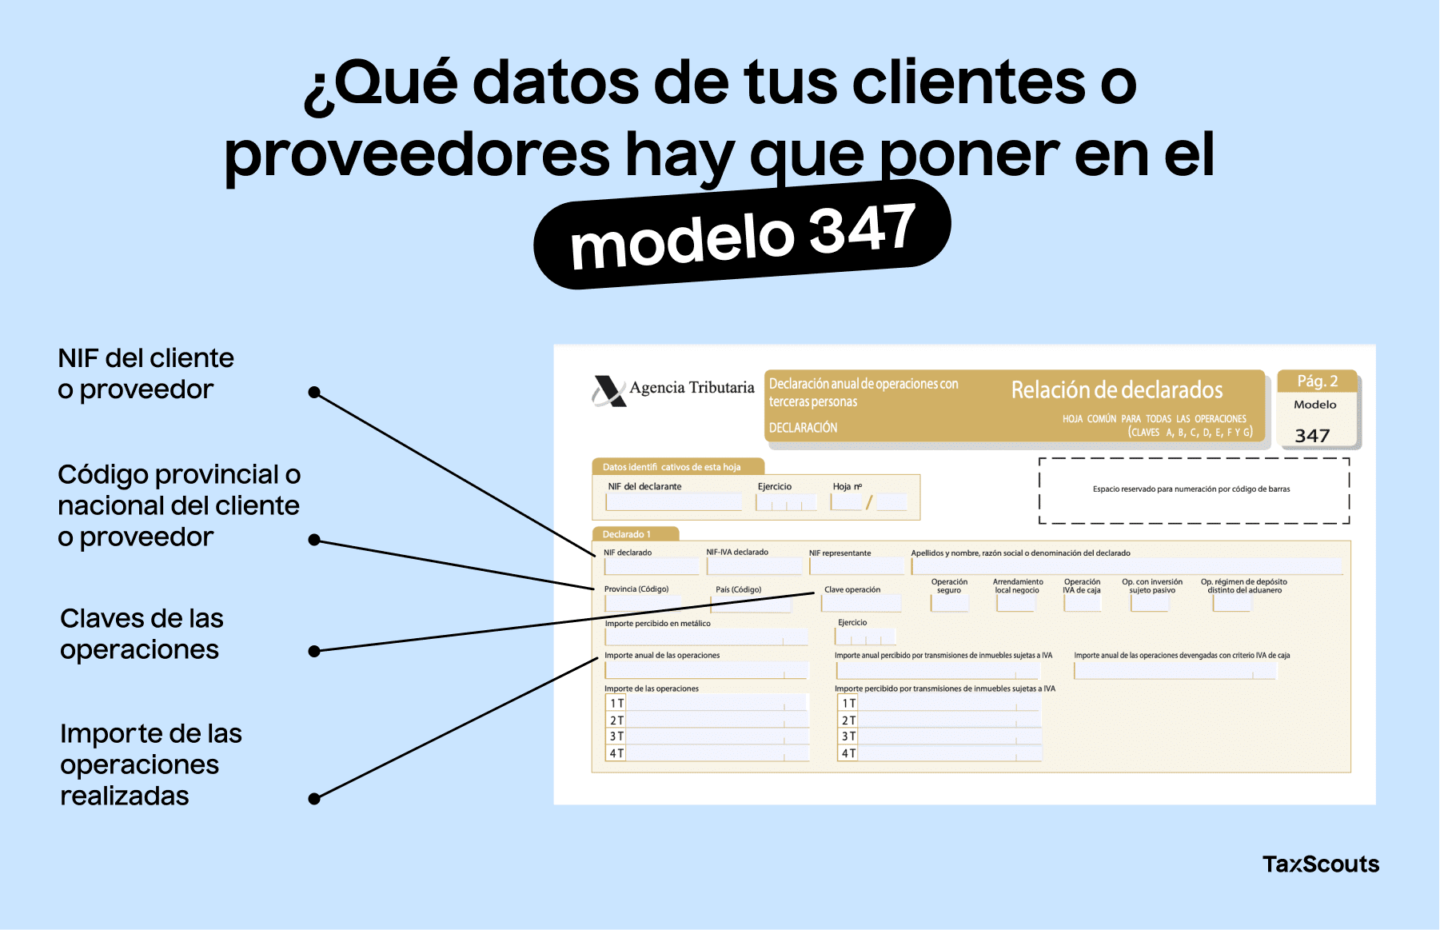 Los datos que hay que incluir de tus clientes o proveedores en la presentación del modelo 347